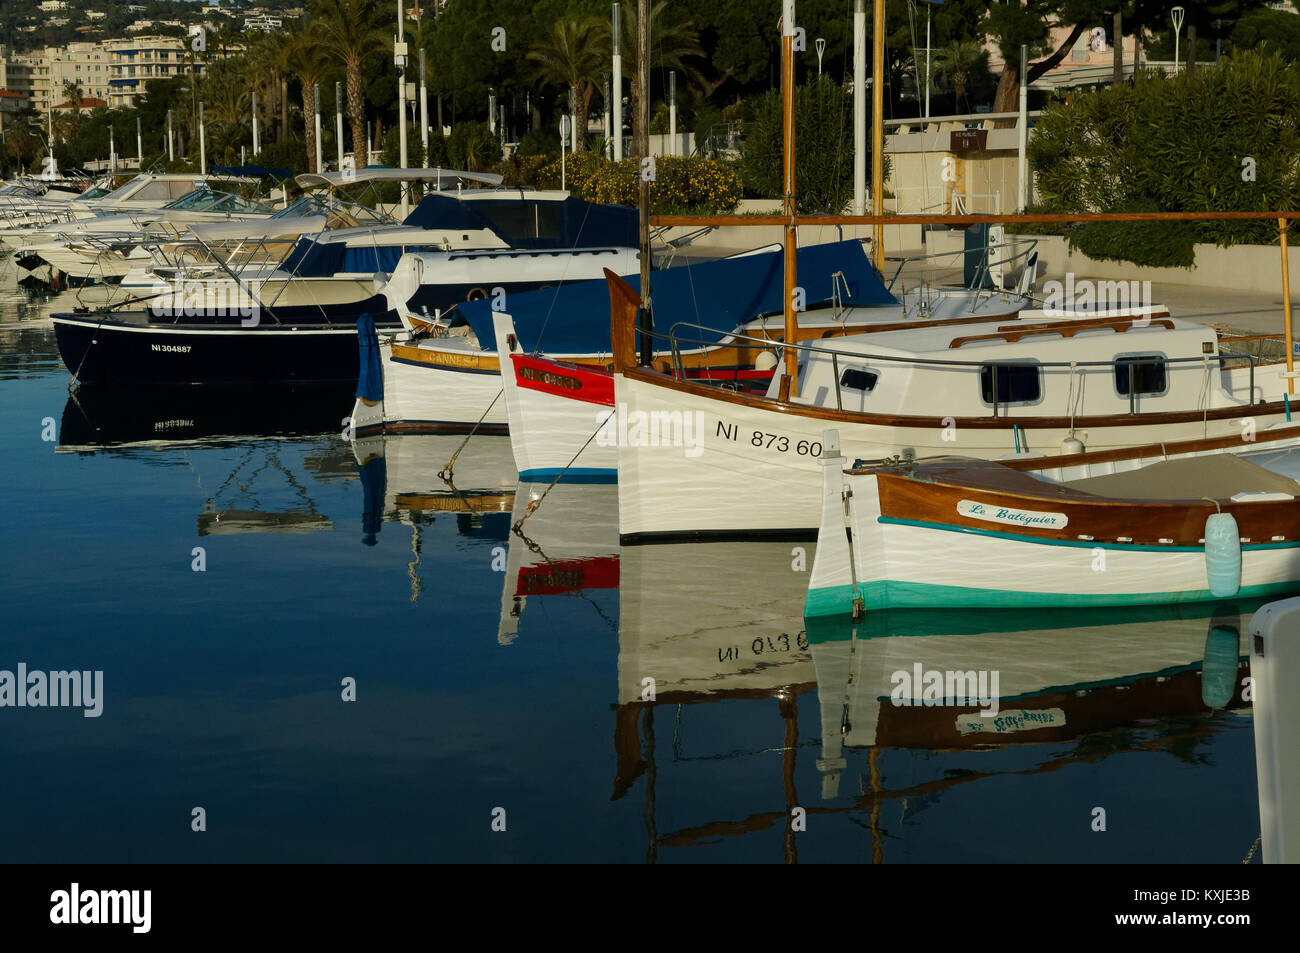 In legno tradizionali barche da pesca denominata "pointu" in Provenza.Qui nel porto di Cannes in Costa Azzurra Foto Stock